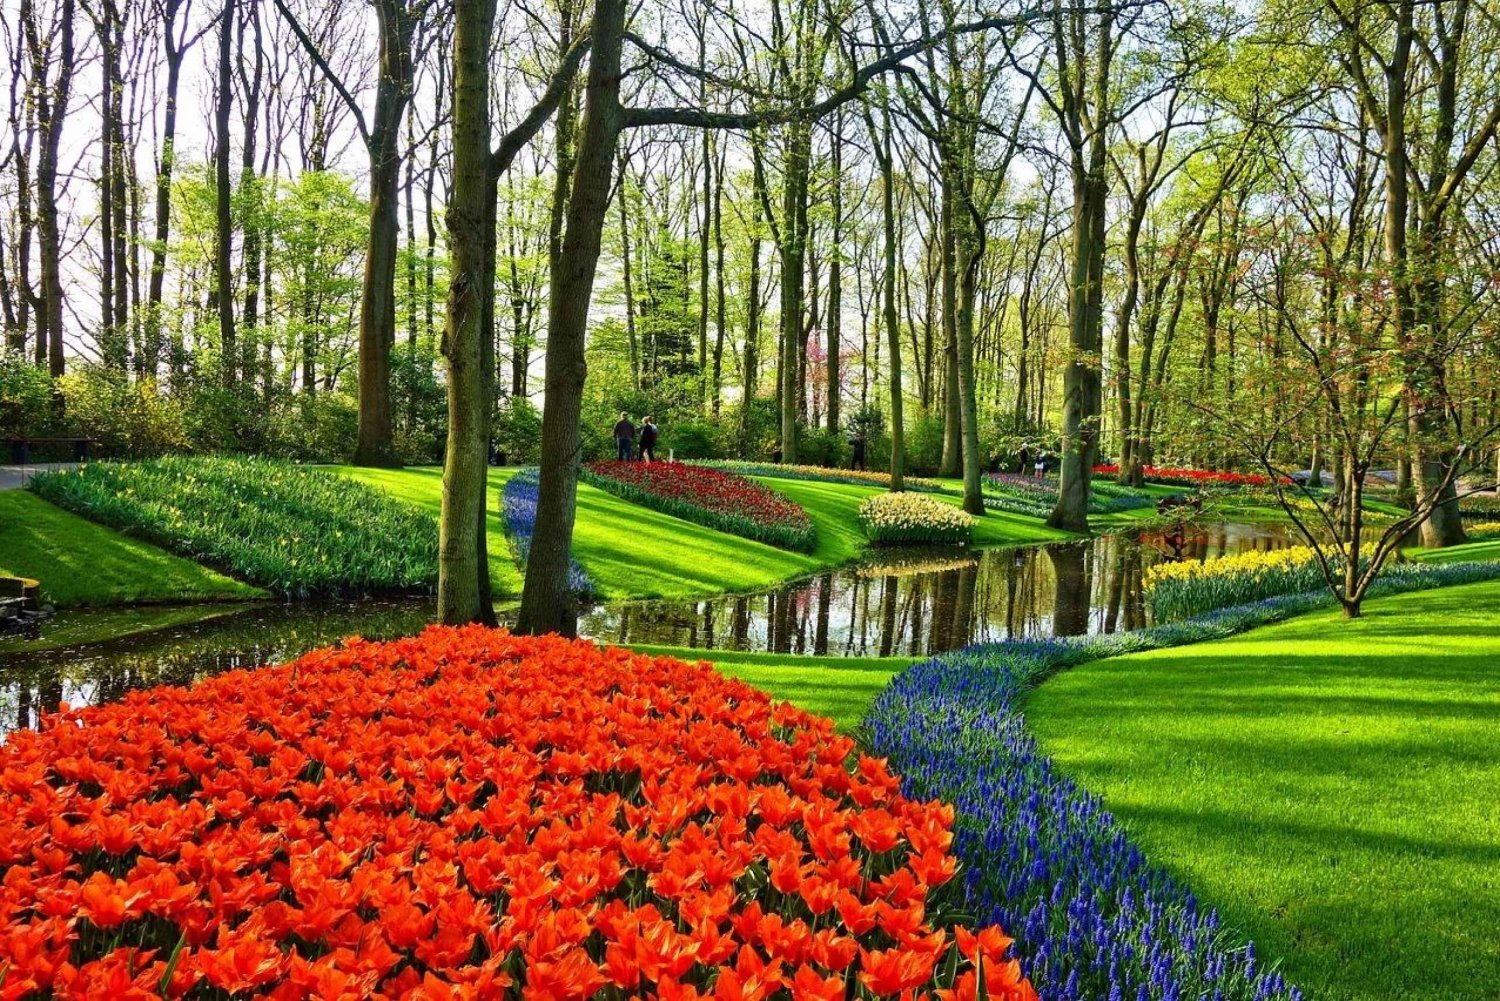 Keukenhof-haven og tulipanoplevelsestur fra Amsterdam